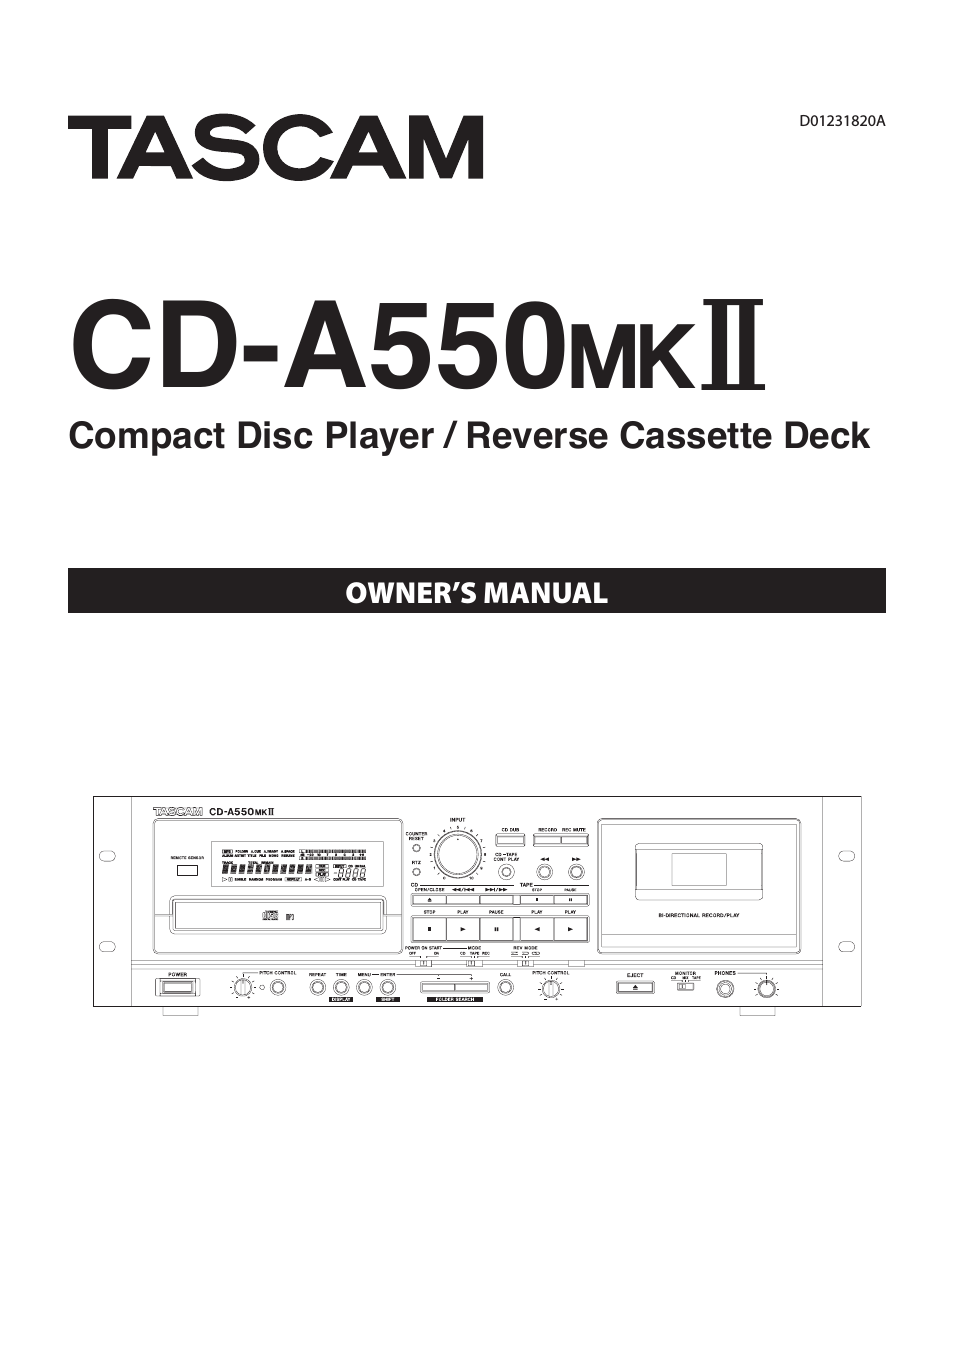 CD-A550MKII